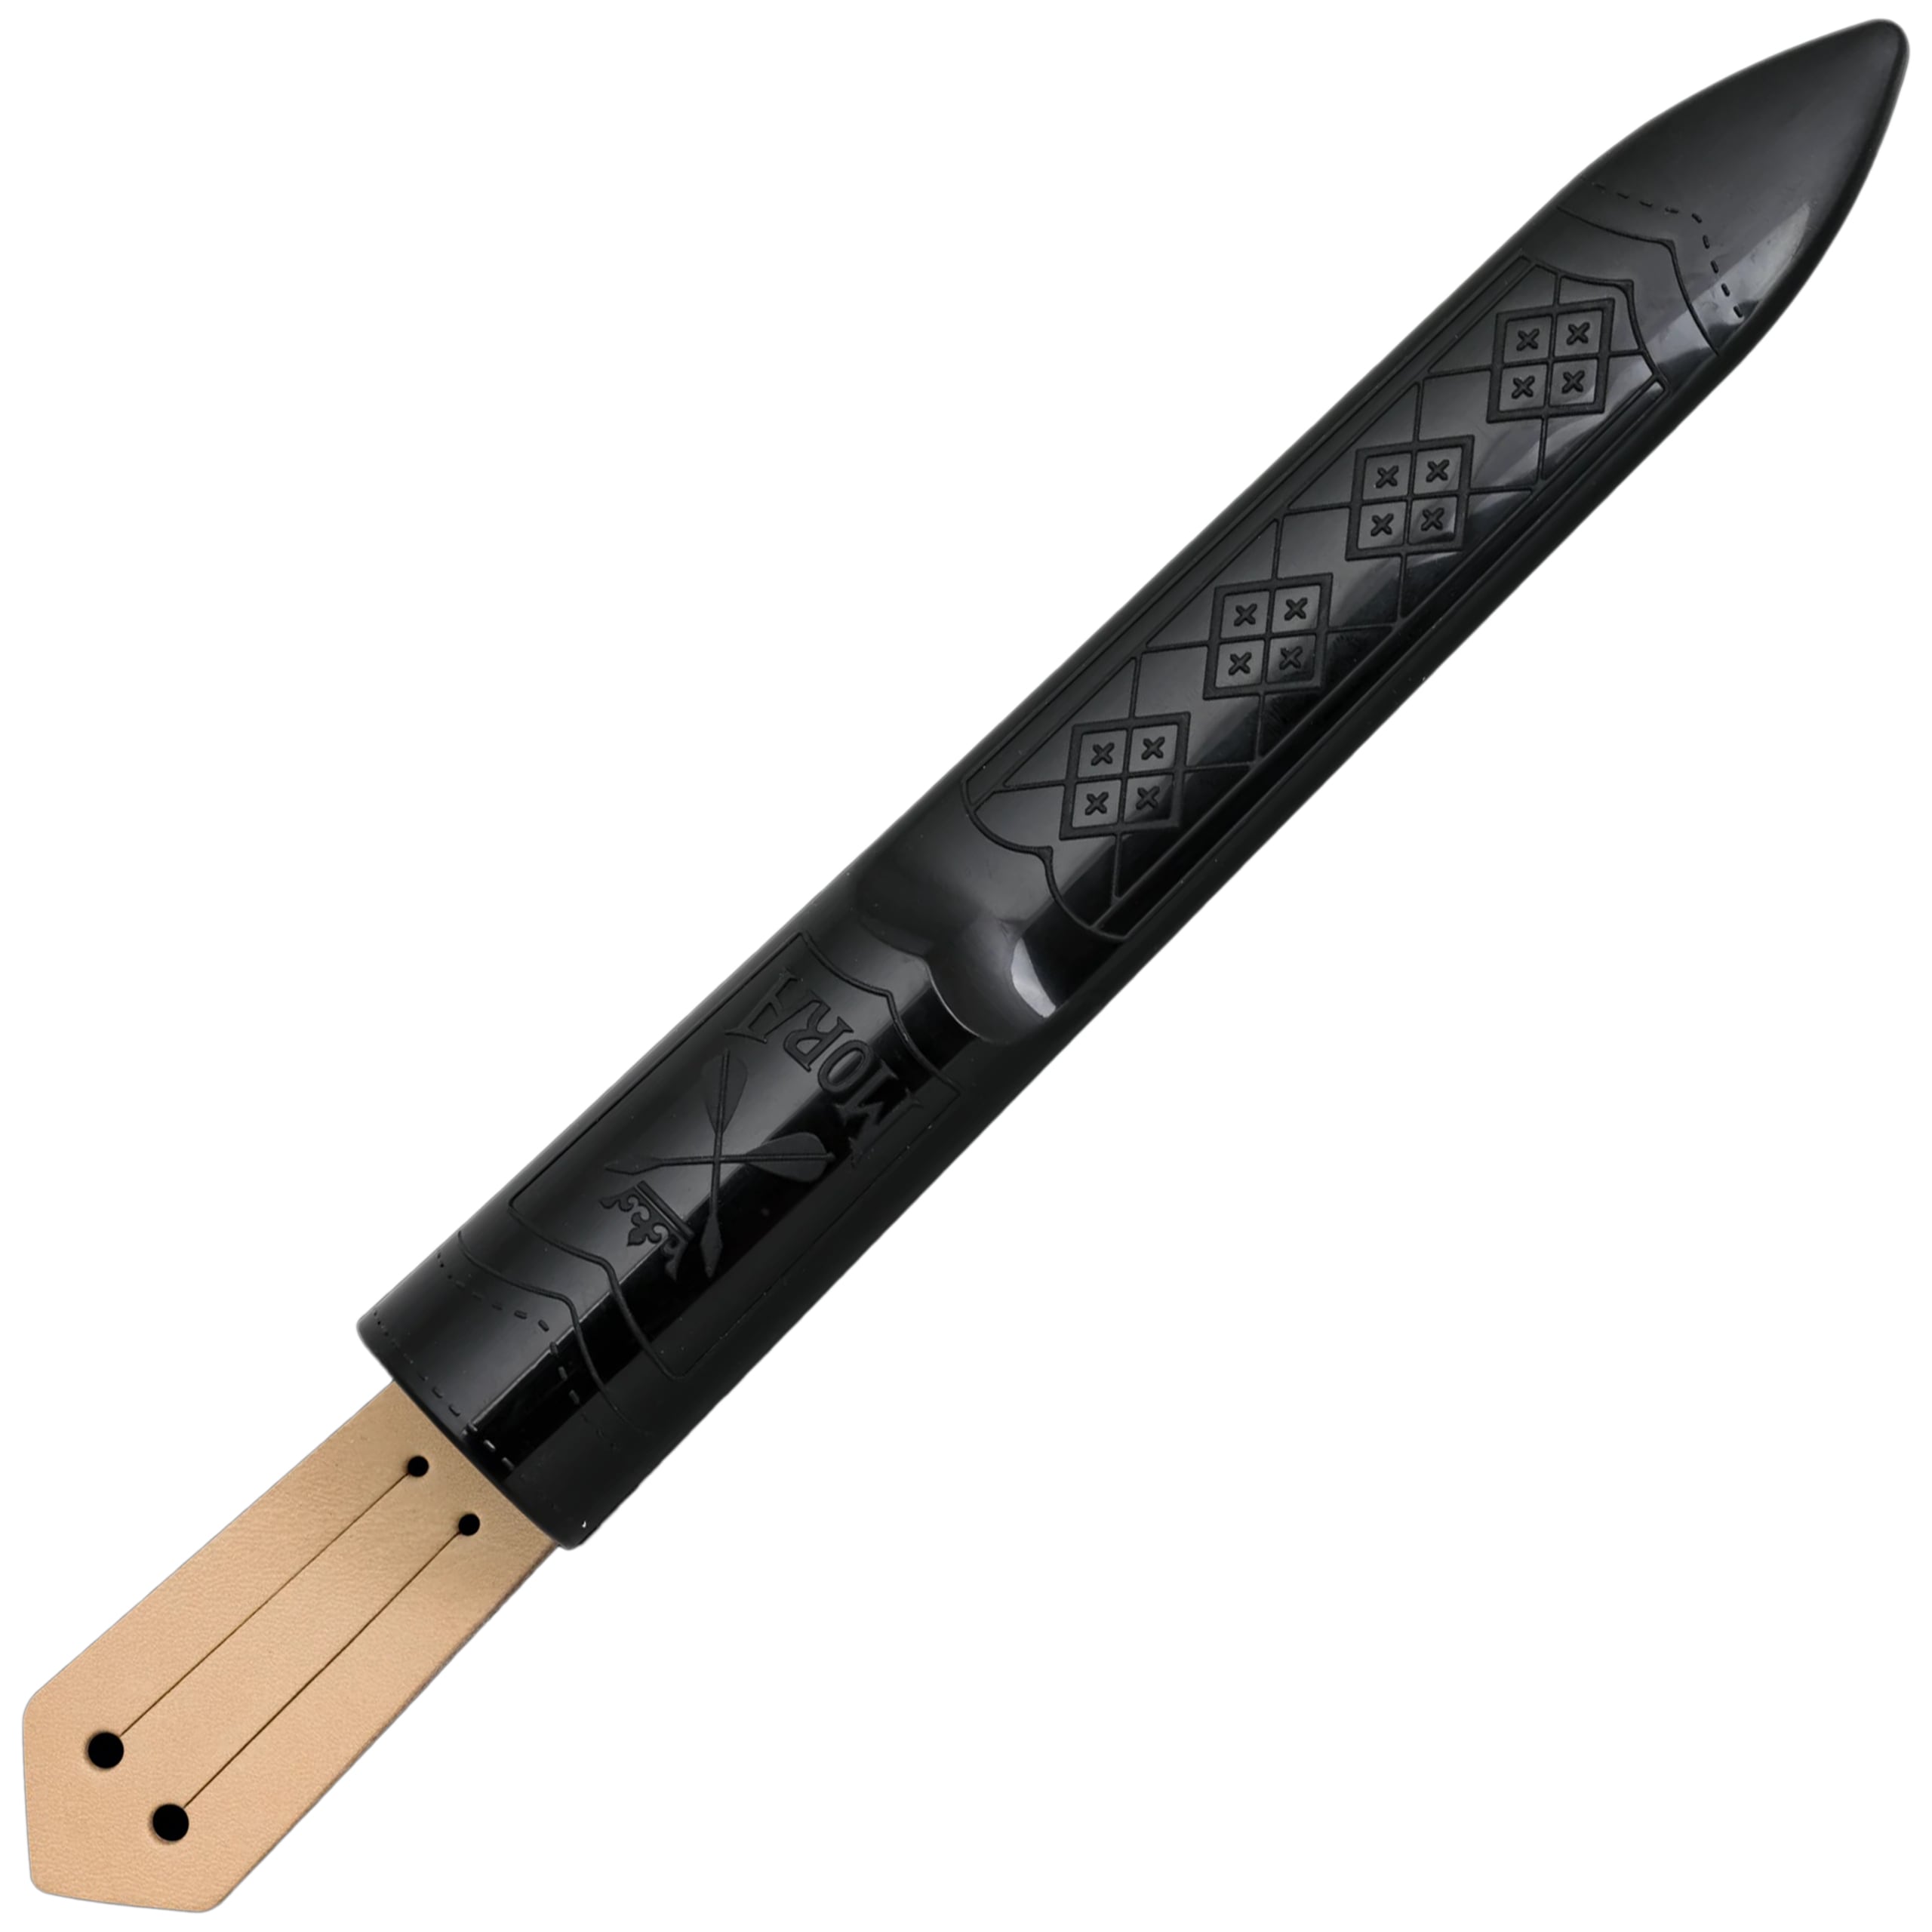 Nóż Mora Classic 3 High Carbon - Red